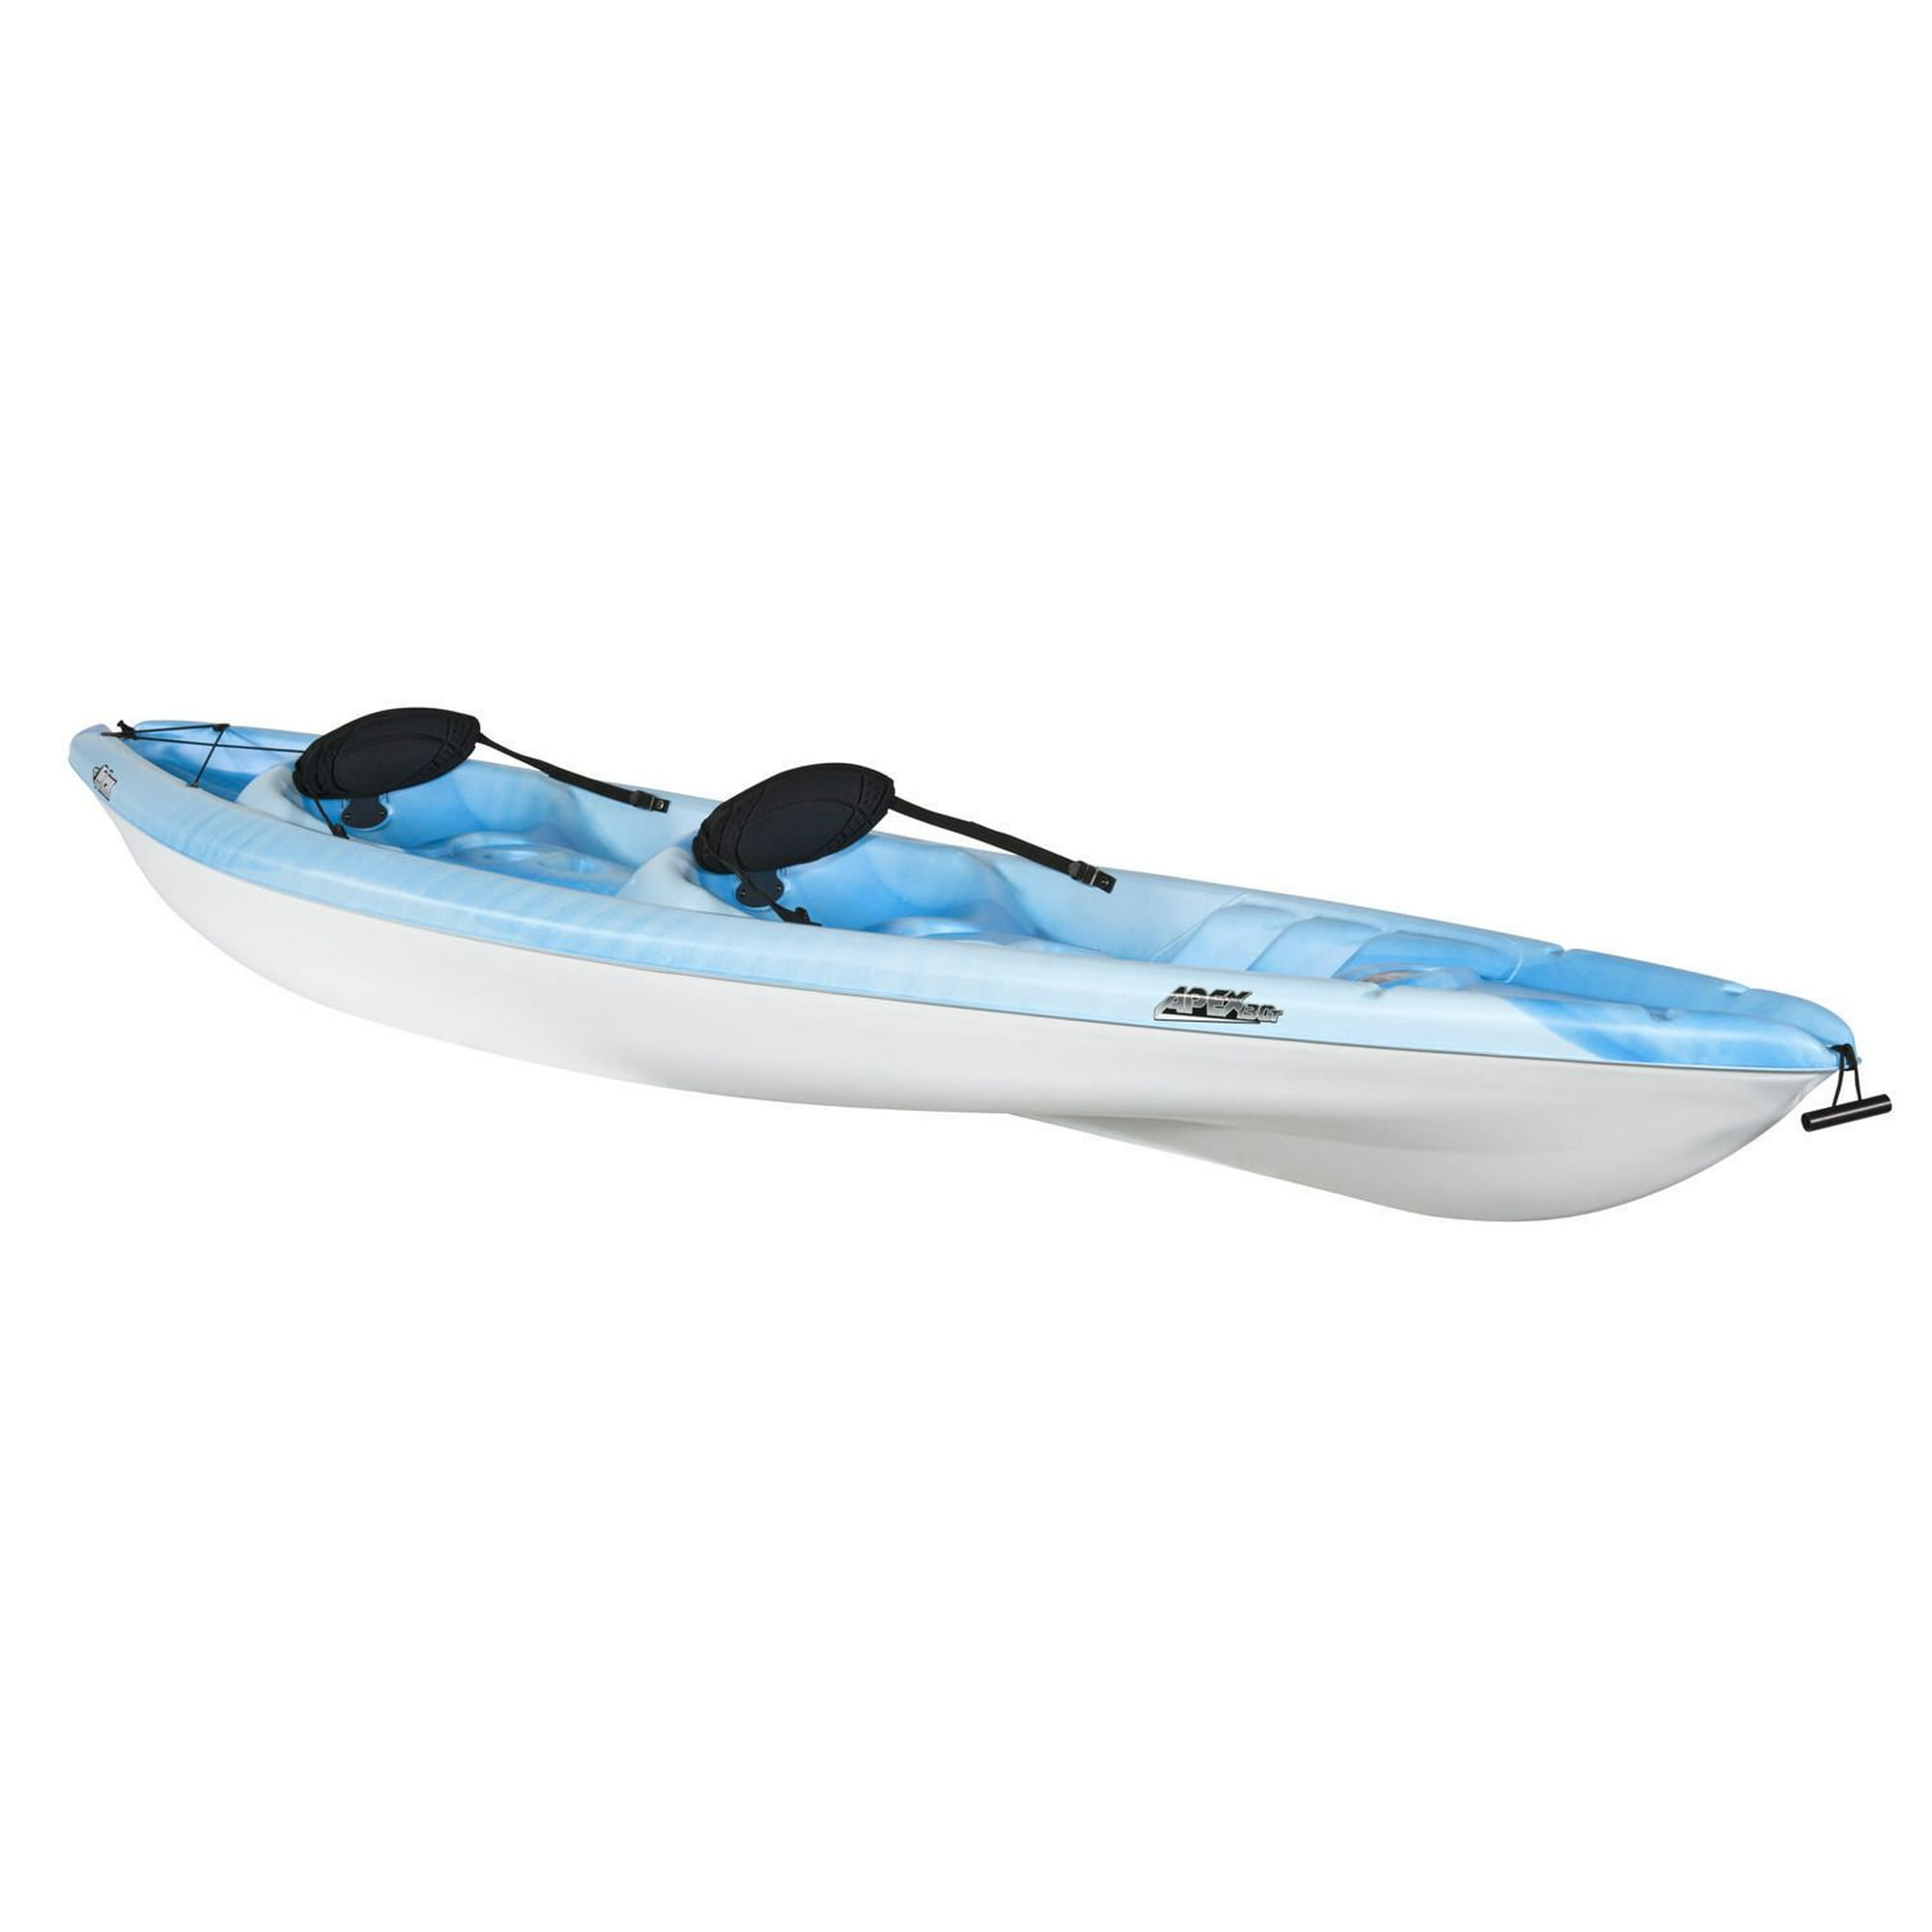 Pelican Boats Apex 100 Sit-on-Top Kayak  Kayak accessories, Kayaking,  White water kayak